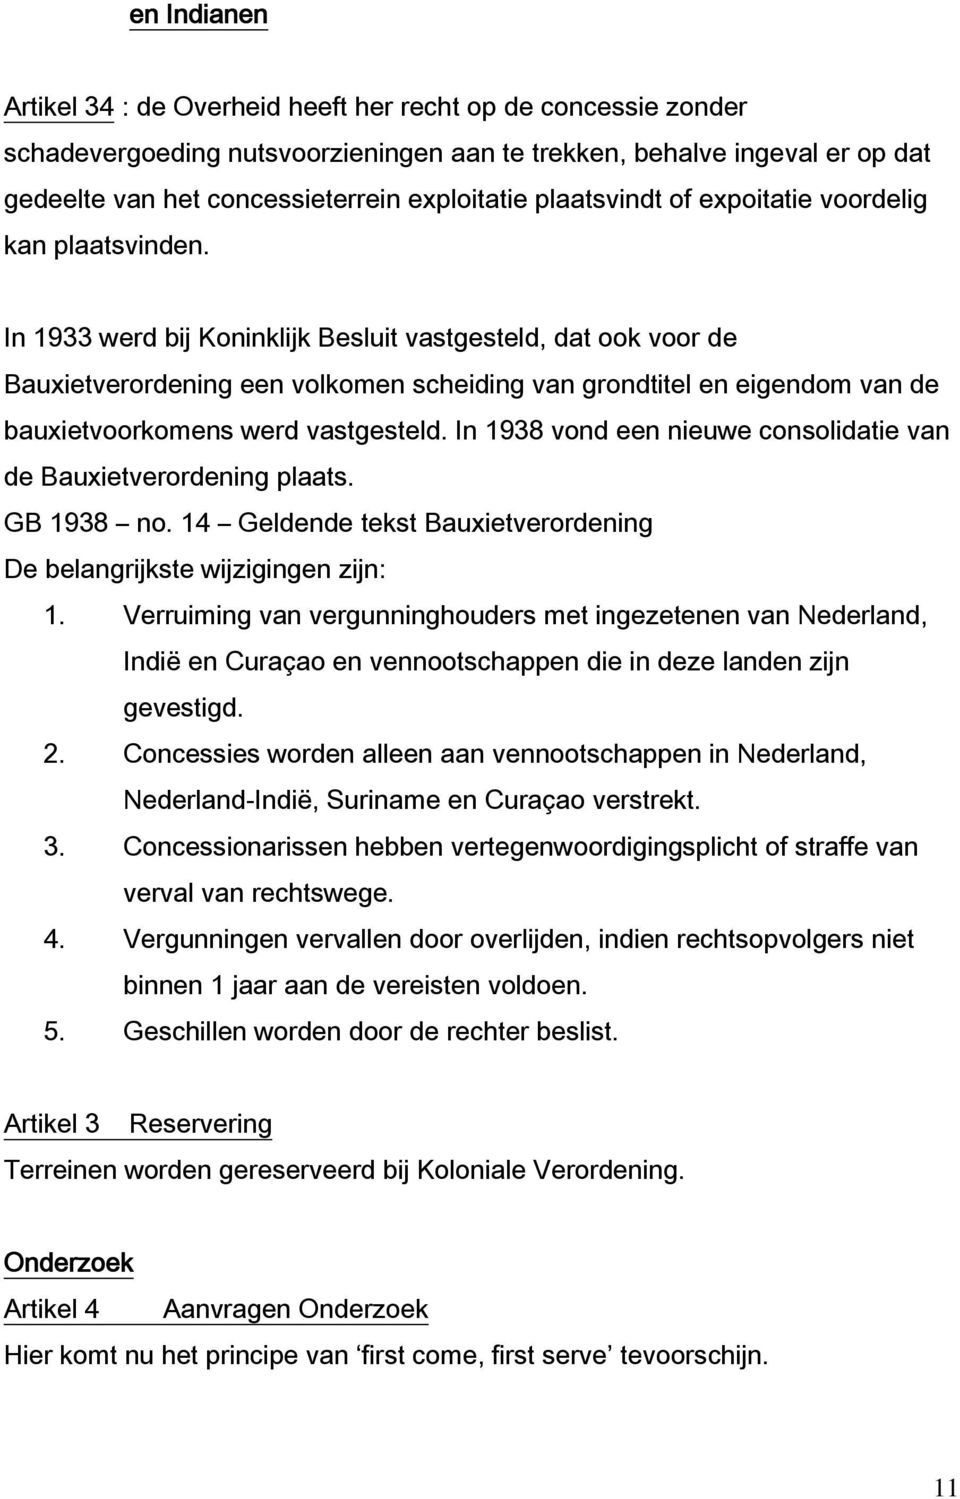 In 1933 werd bij Koninklijk Besluit vastgesteld, dat ook voor de Bauxietverordening een volkomen scheiding van grondtitel en eigendom van de bauxietvoorkomens werd vastgesteld.